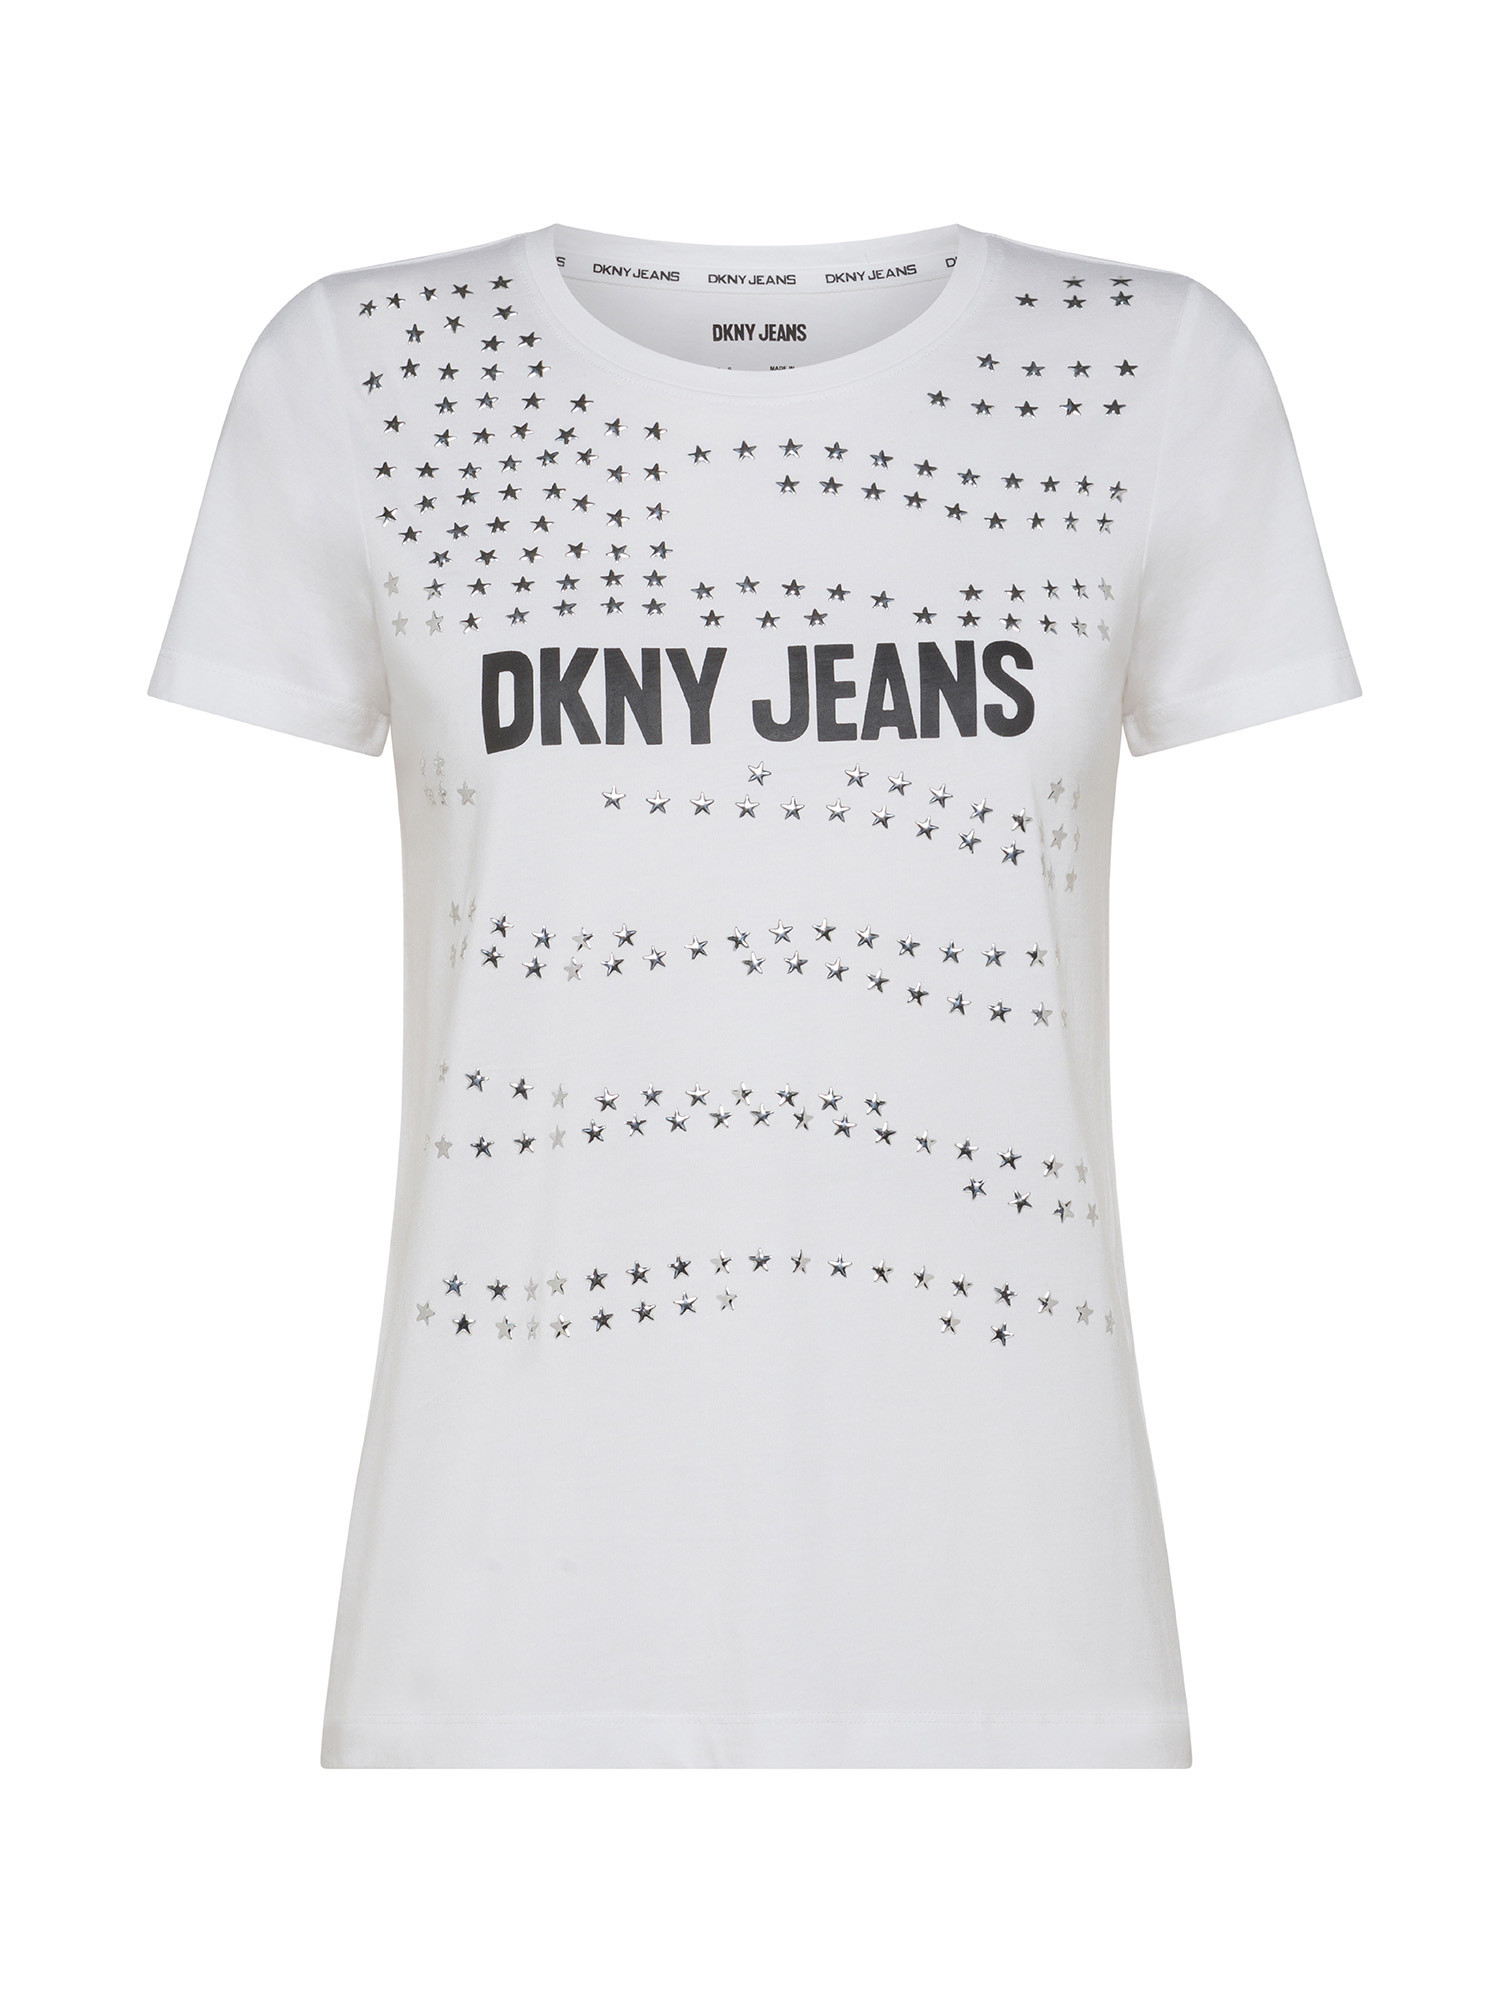 DKNY - Logo T-Shirt, White, large image number 0